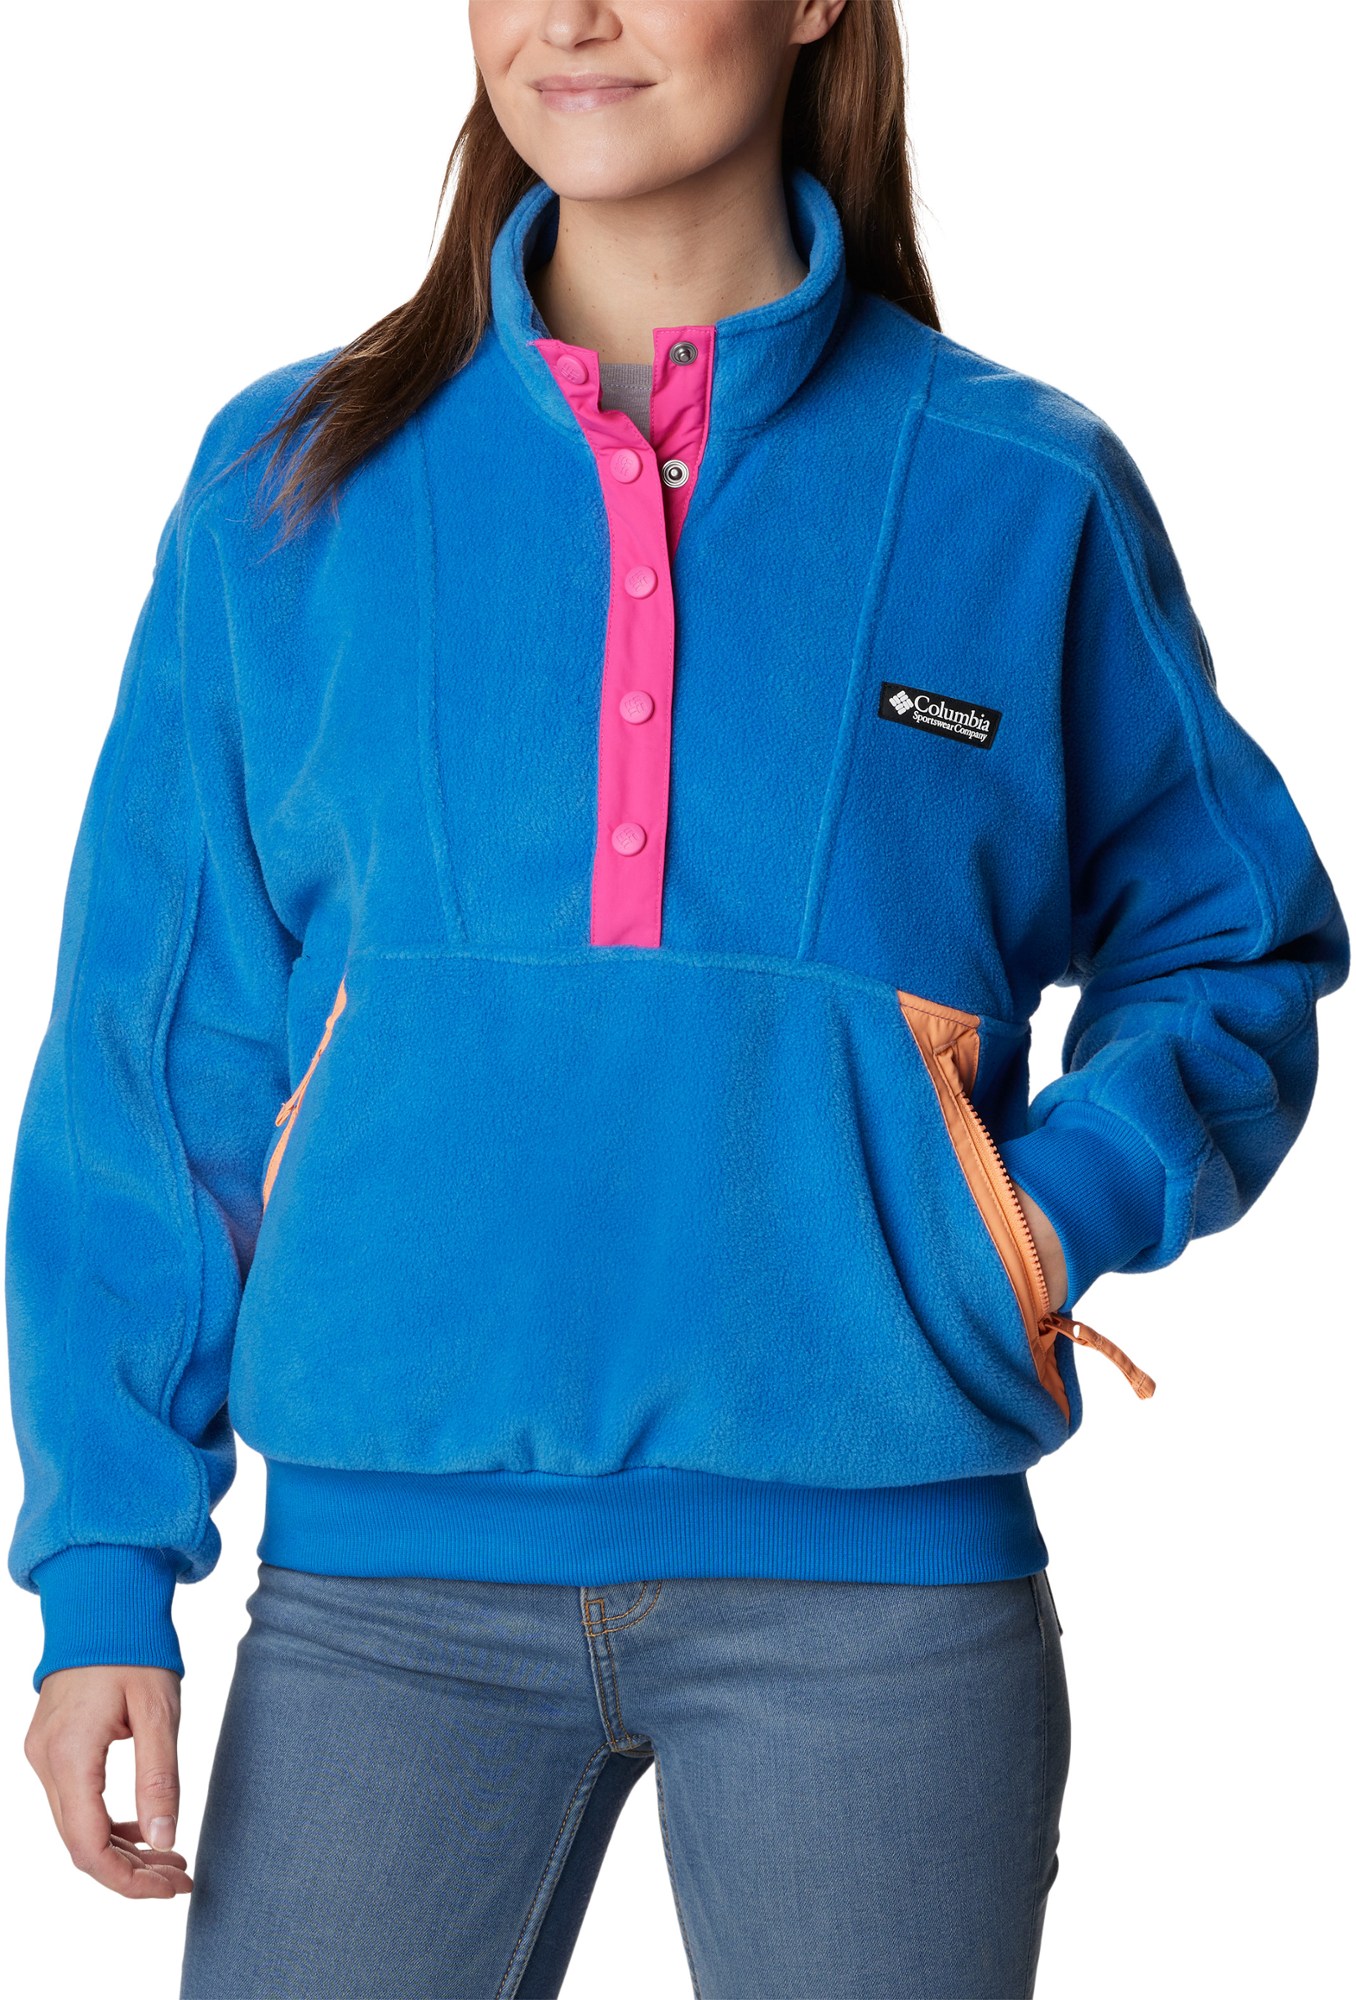 Флисовый пуловер Wintertrainer — женский Columbia, синий